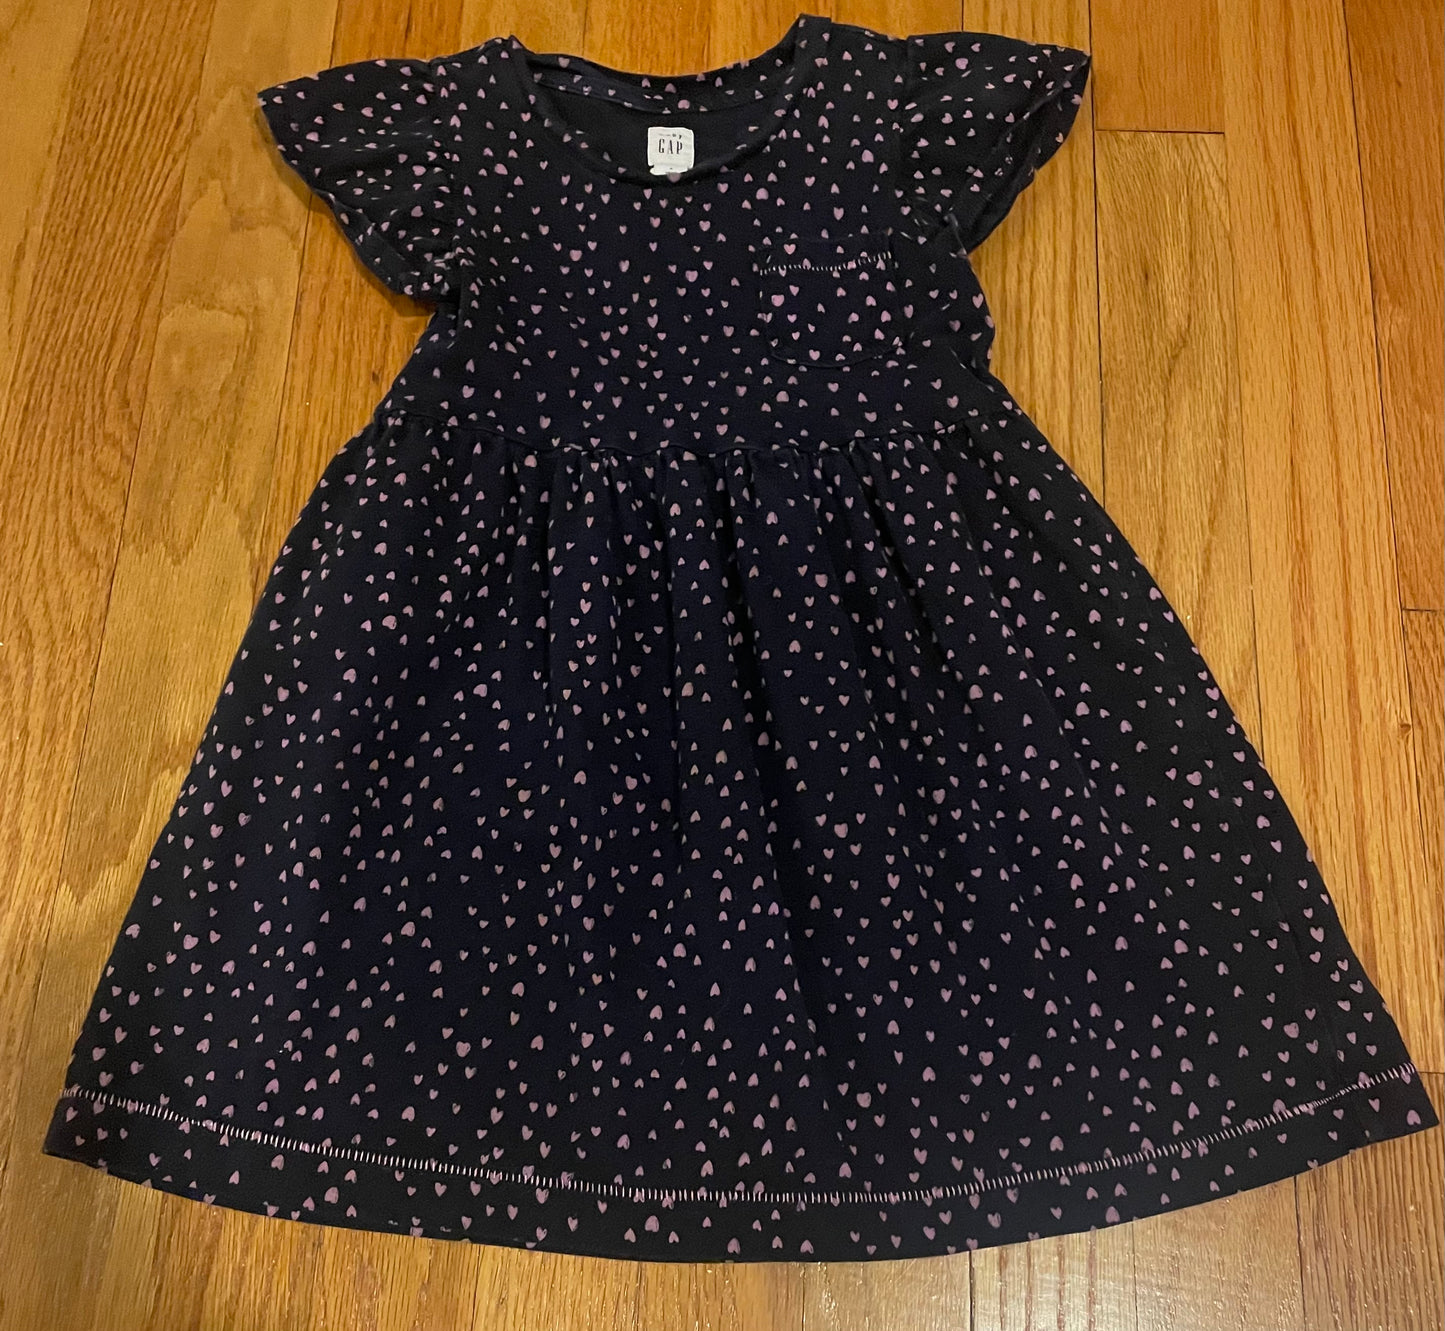 Size 4T - Gap - heart dress